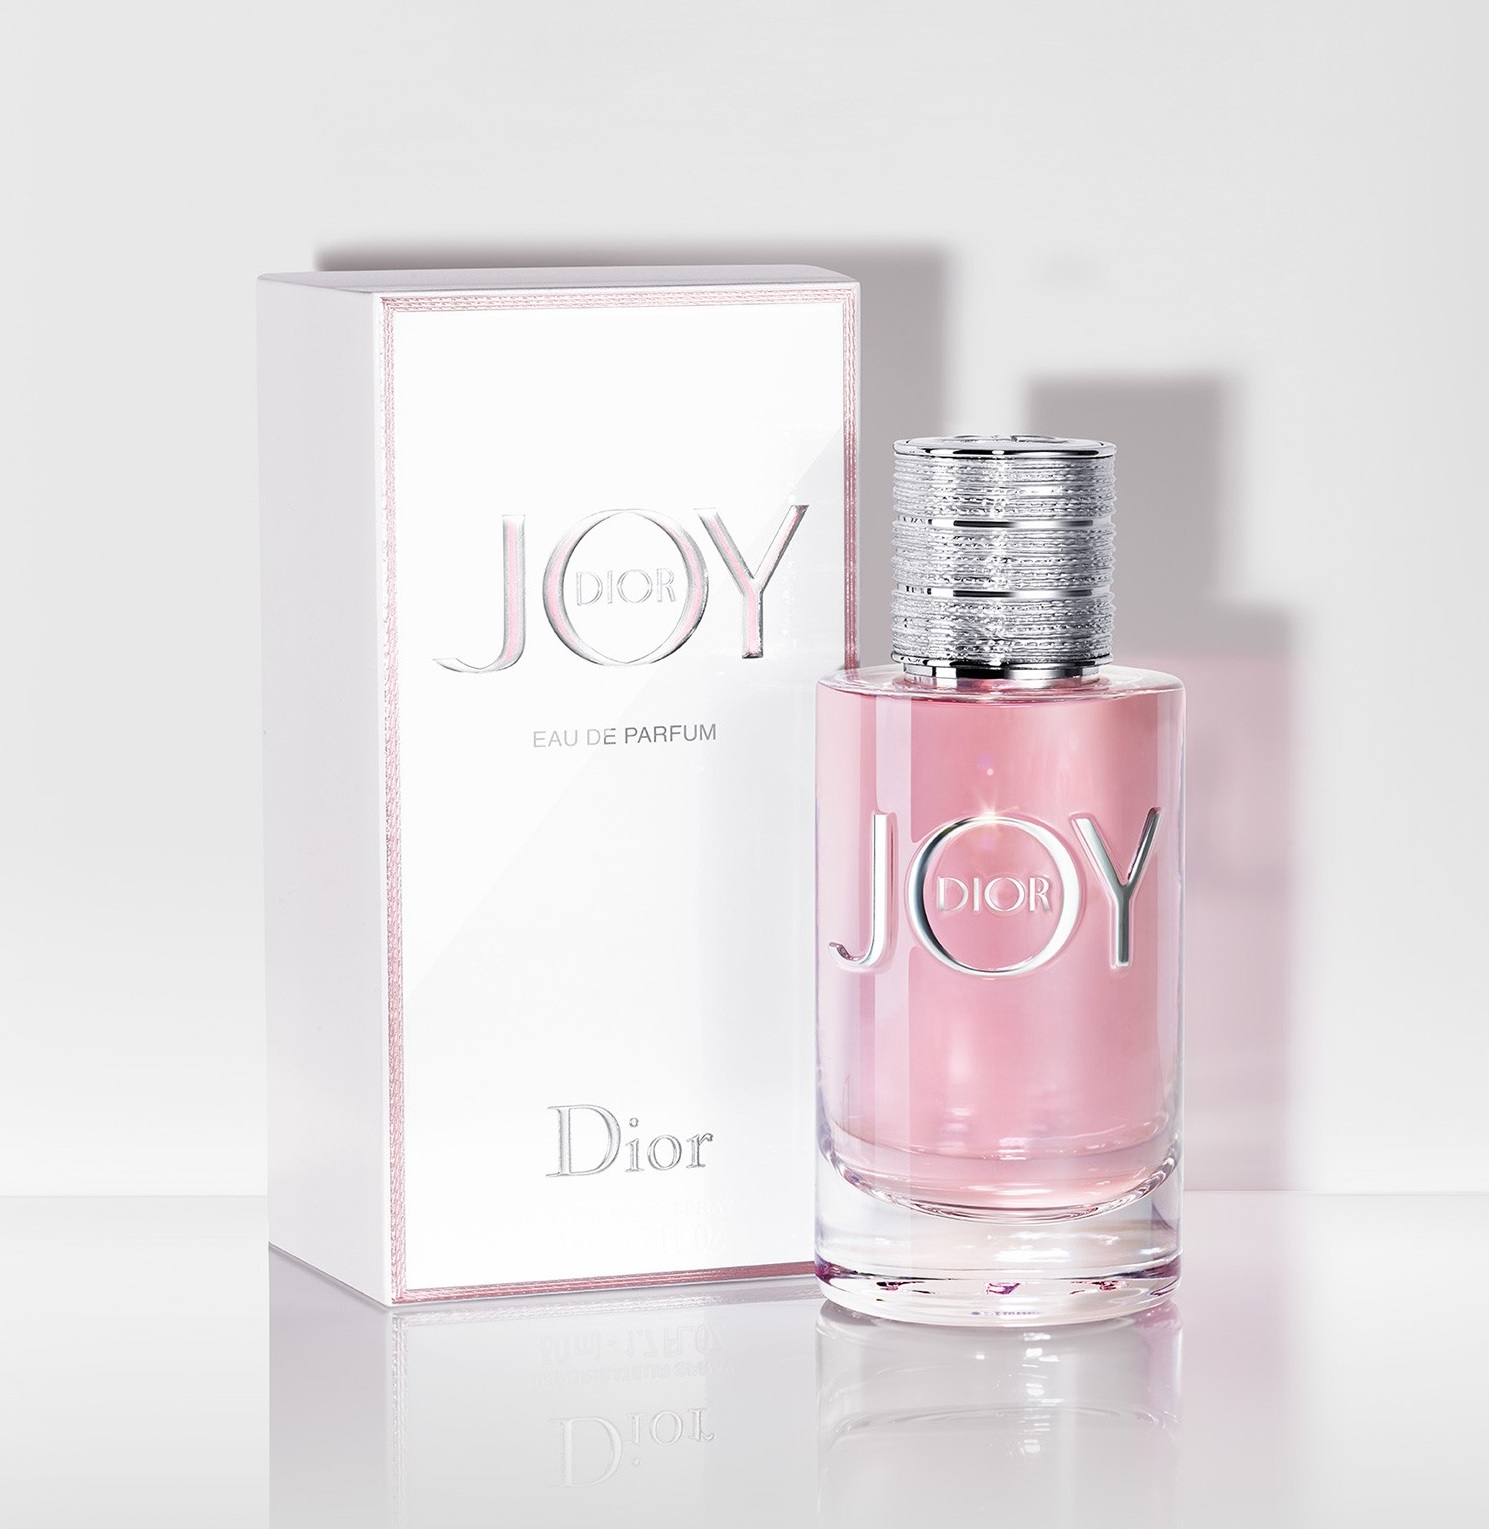 少し豊富な贈り物-Christian Dior - Christia•n Dior サングラス ロゴ ワインレ•ッド - egadgets.co.za